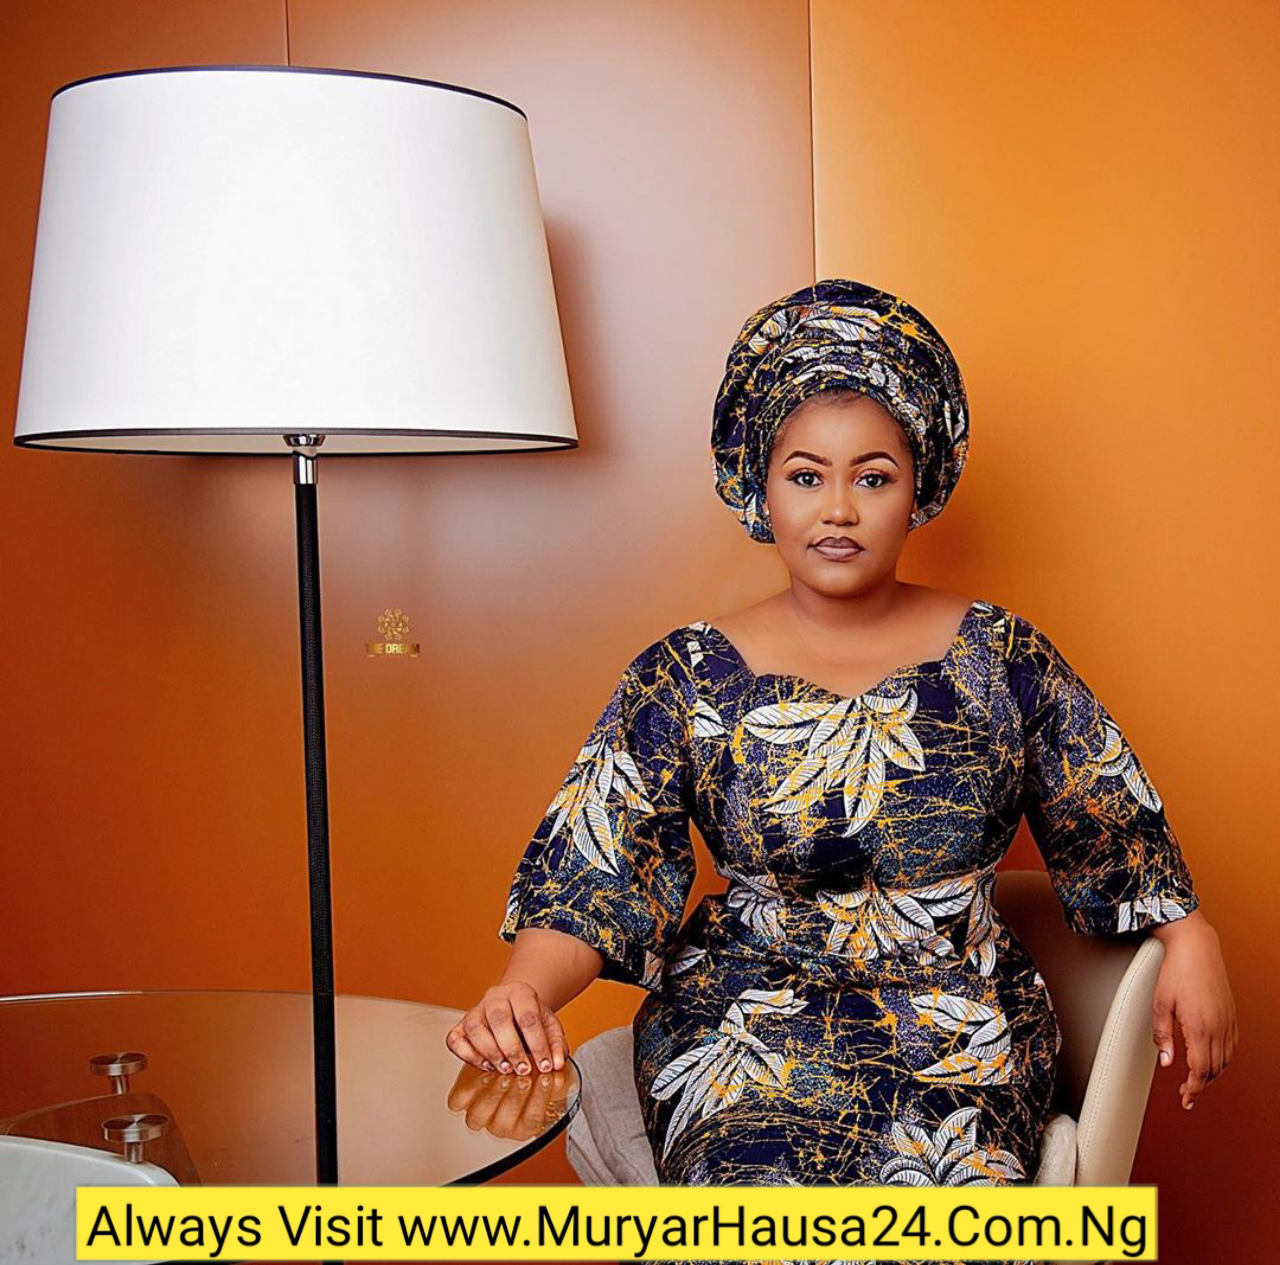 Kalli Zafafan Hotunan Hadiza Gabon - MURYAR HAUSA24 ONLINE MEDIA